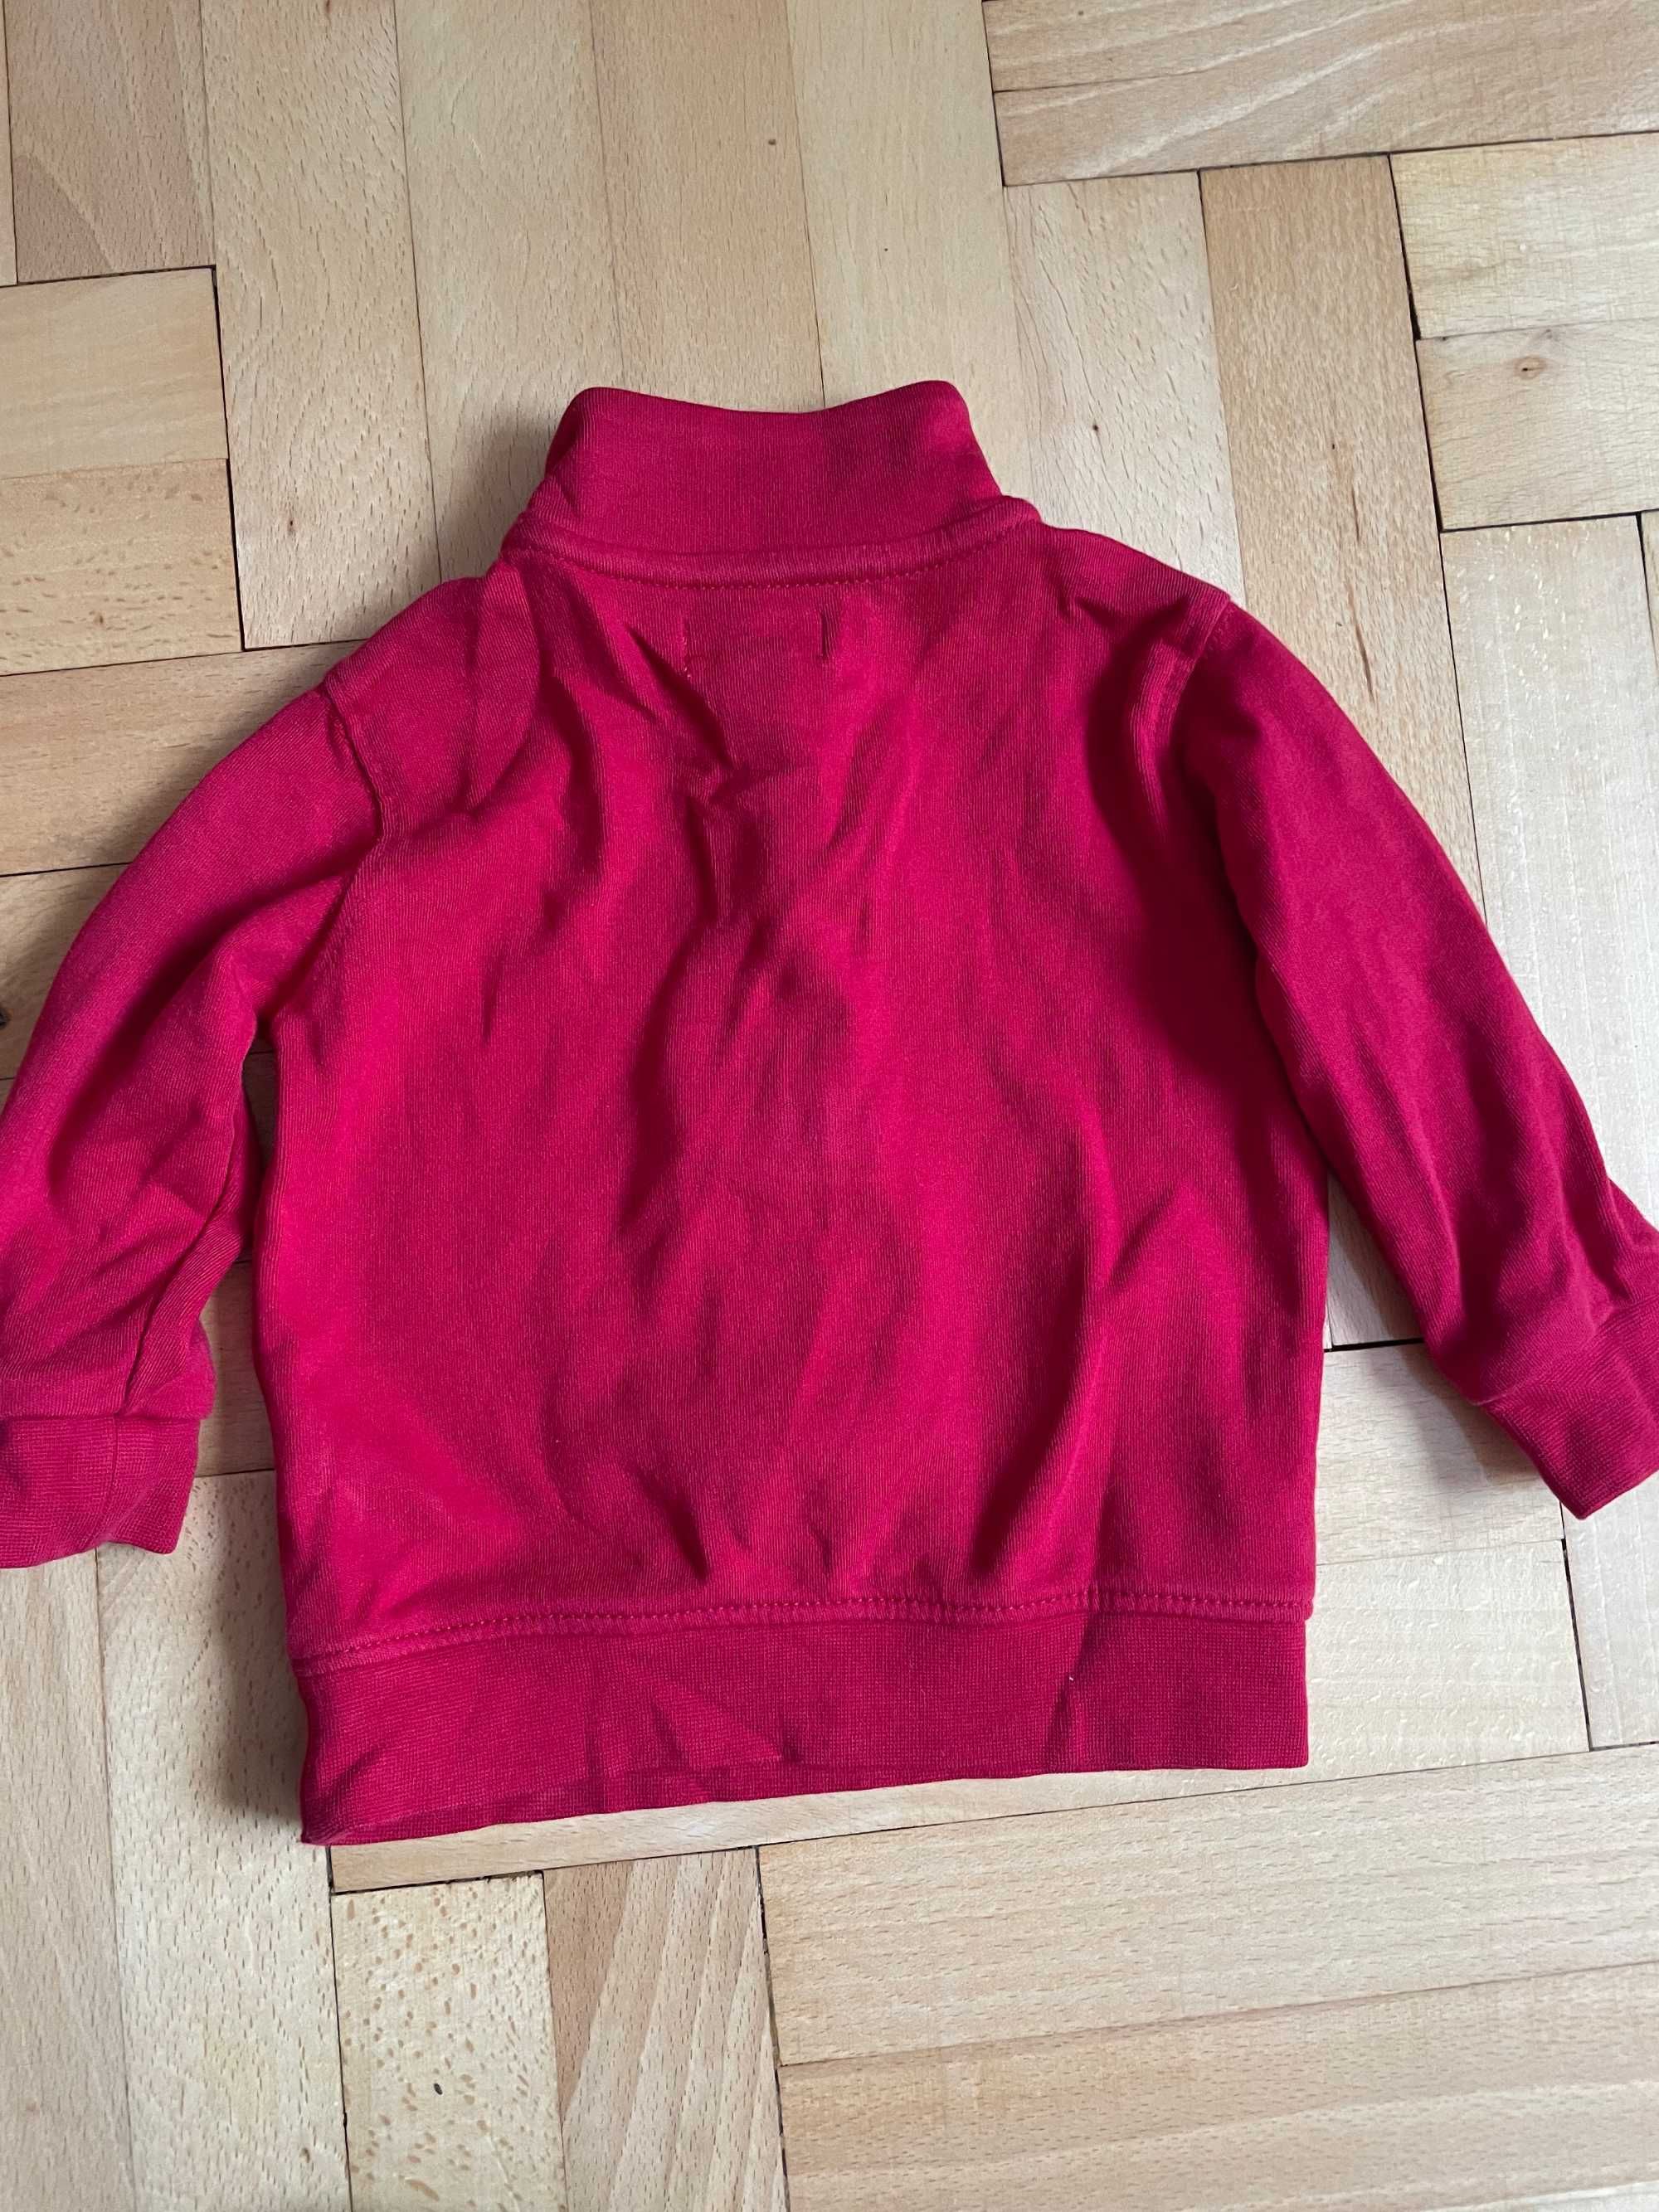 RALPH LAUREN bluza rozmiar 74, 9 m. 100% oryginalna, czerwona